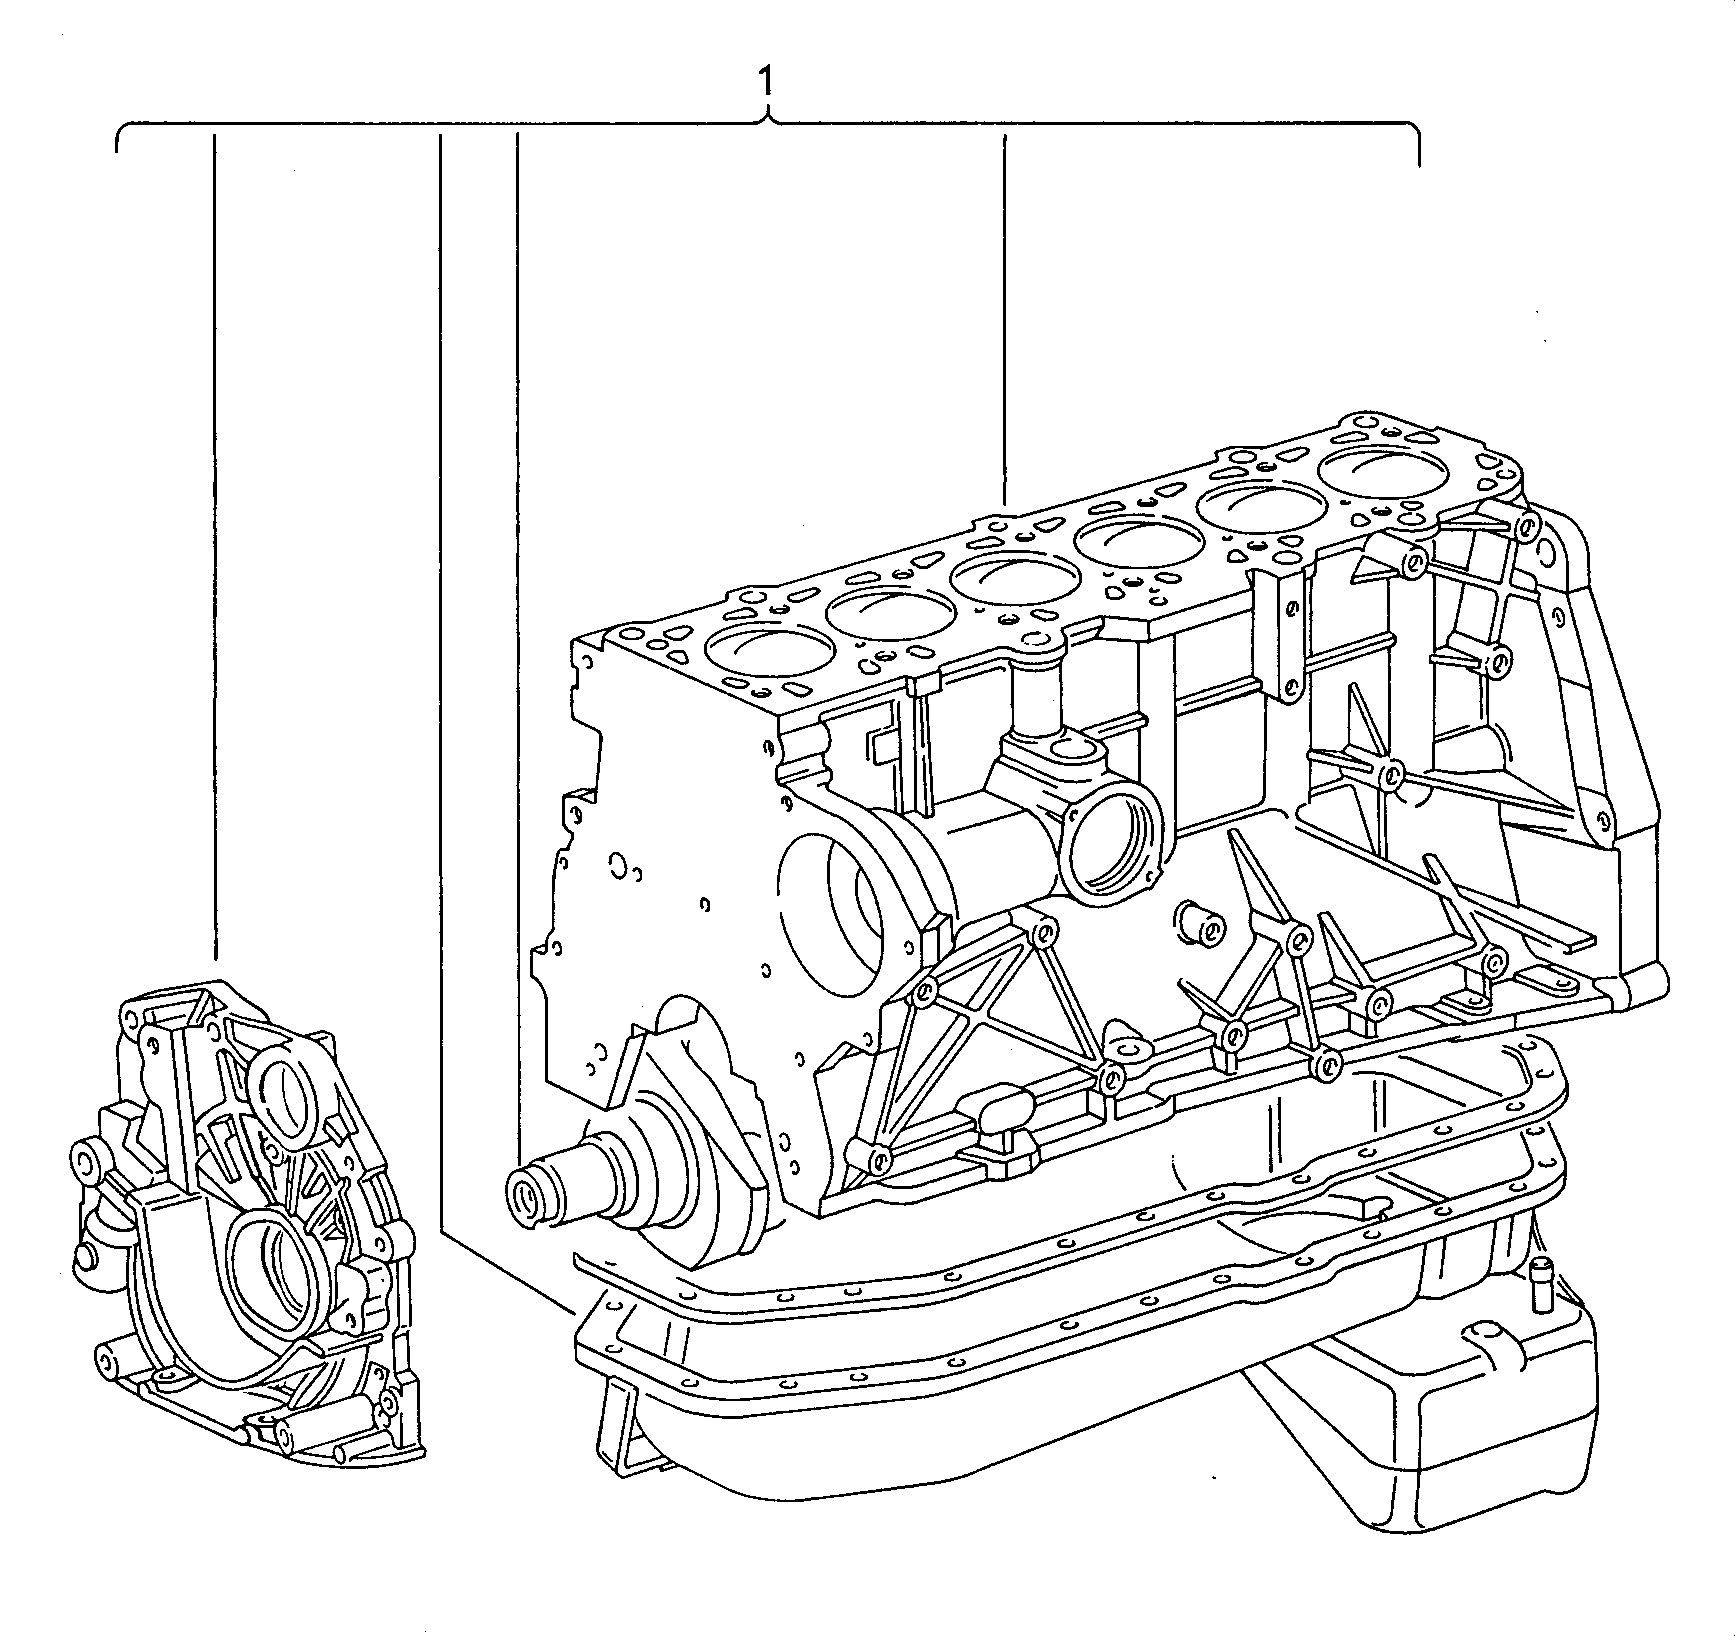 motore parz.con albero motore,<br>pistoni, pompa e coppa olio 2,4l - Diesel-Industrie-Motore - imd